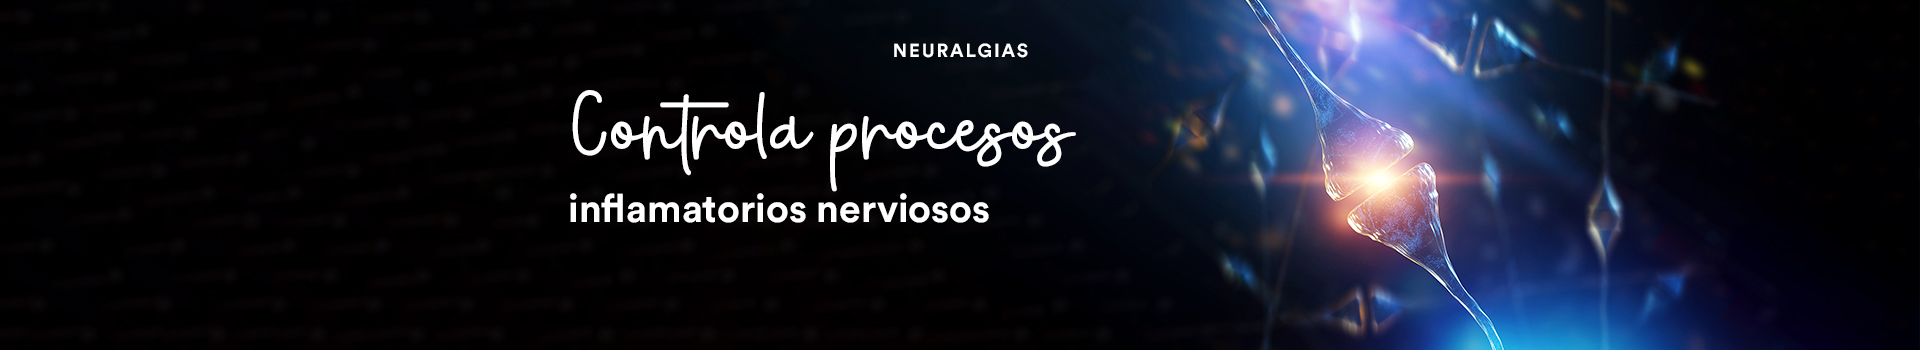 Neuralgias_seccion búsqueda productos